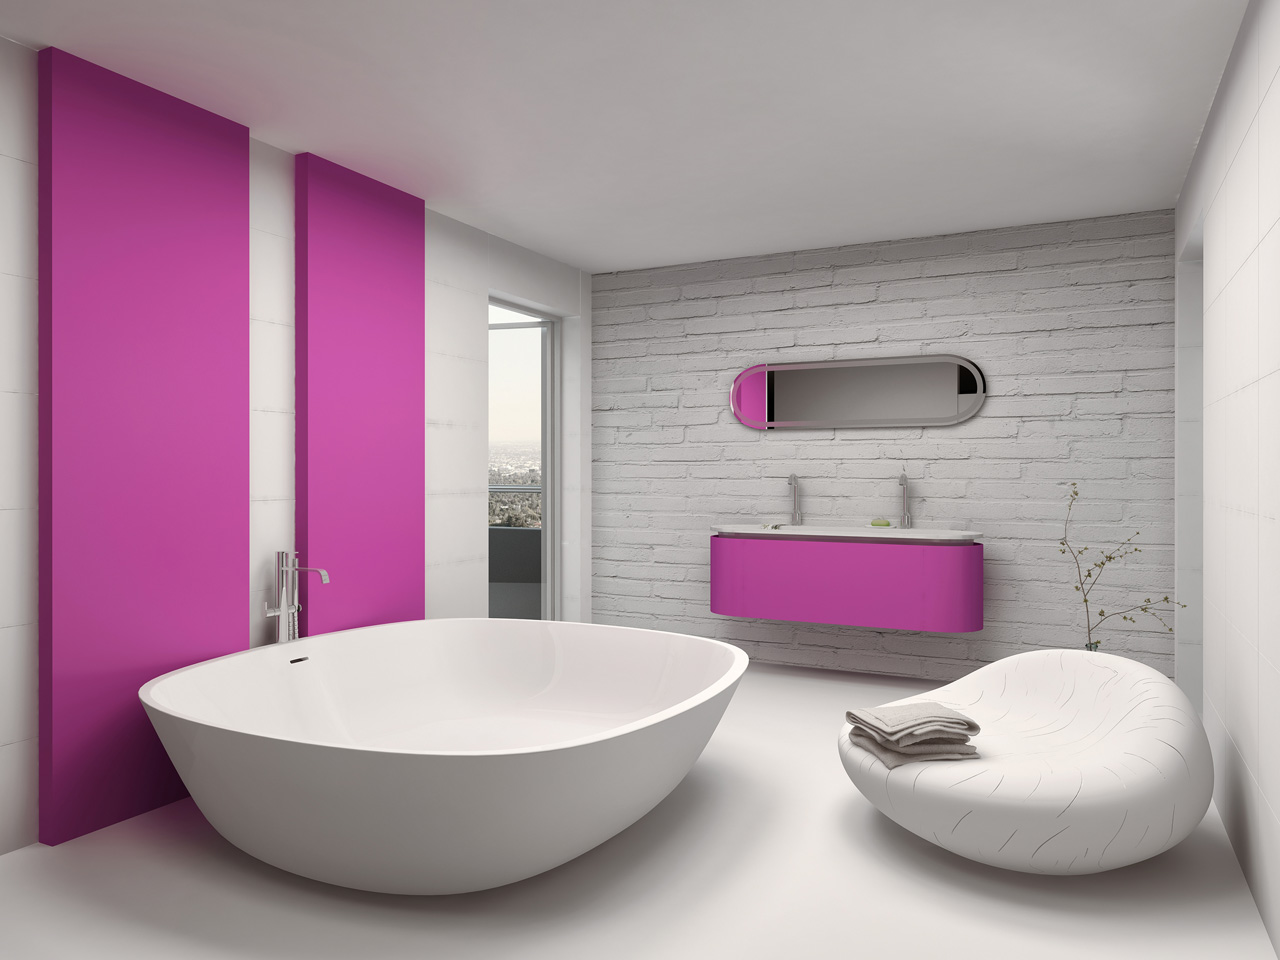 Kitchen & Bathroom Design Portsmouth